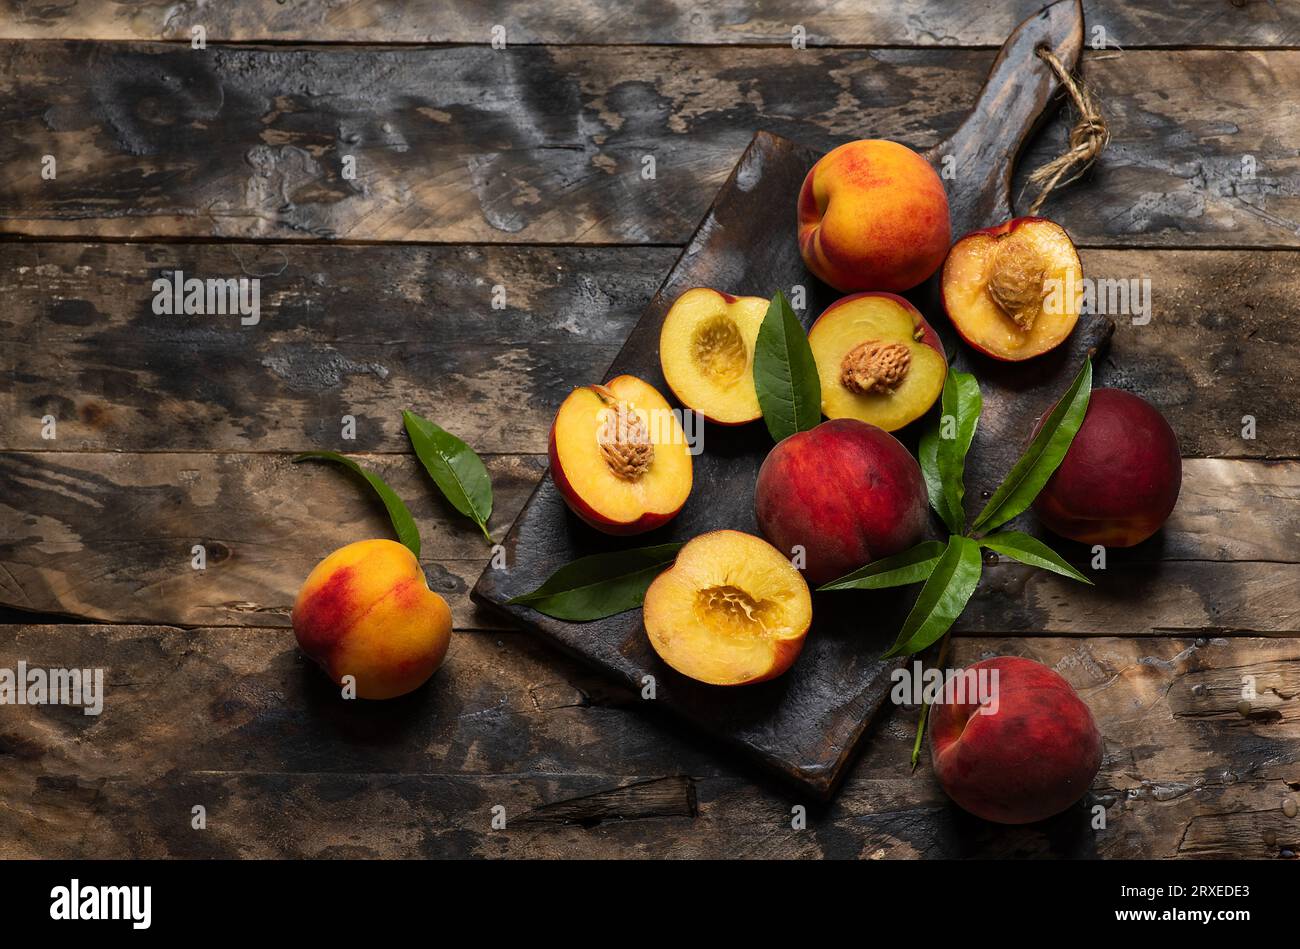 Frisch reife dunkelrote Pfirsiche mit Blättern auf Schneidebrett und Holztisch. Ganze Früchte und Hälften saftiger, heller orangener, köstlicher Pfirsiche auf dem Eingang Stockfoto